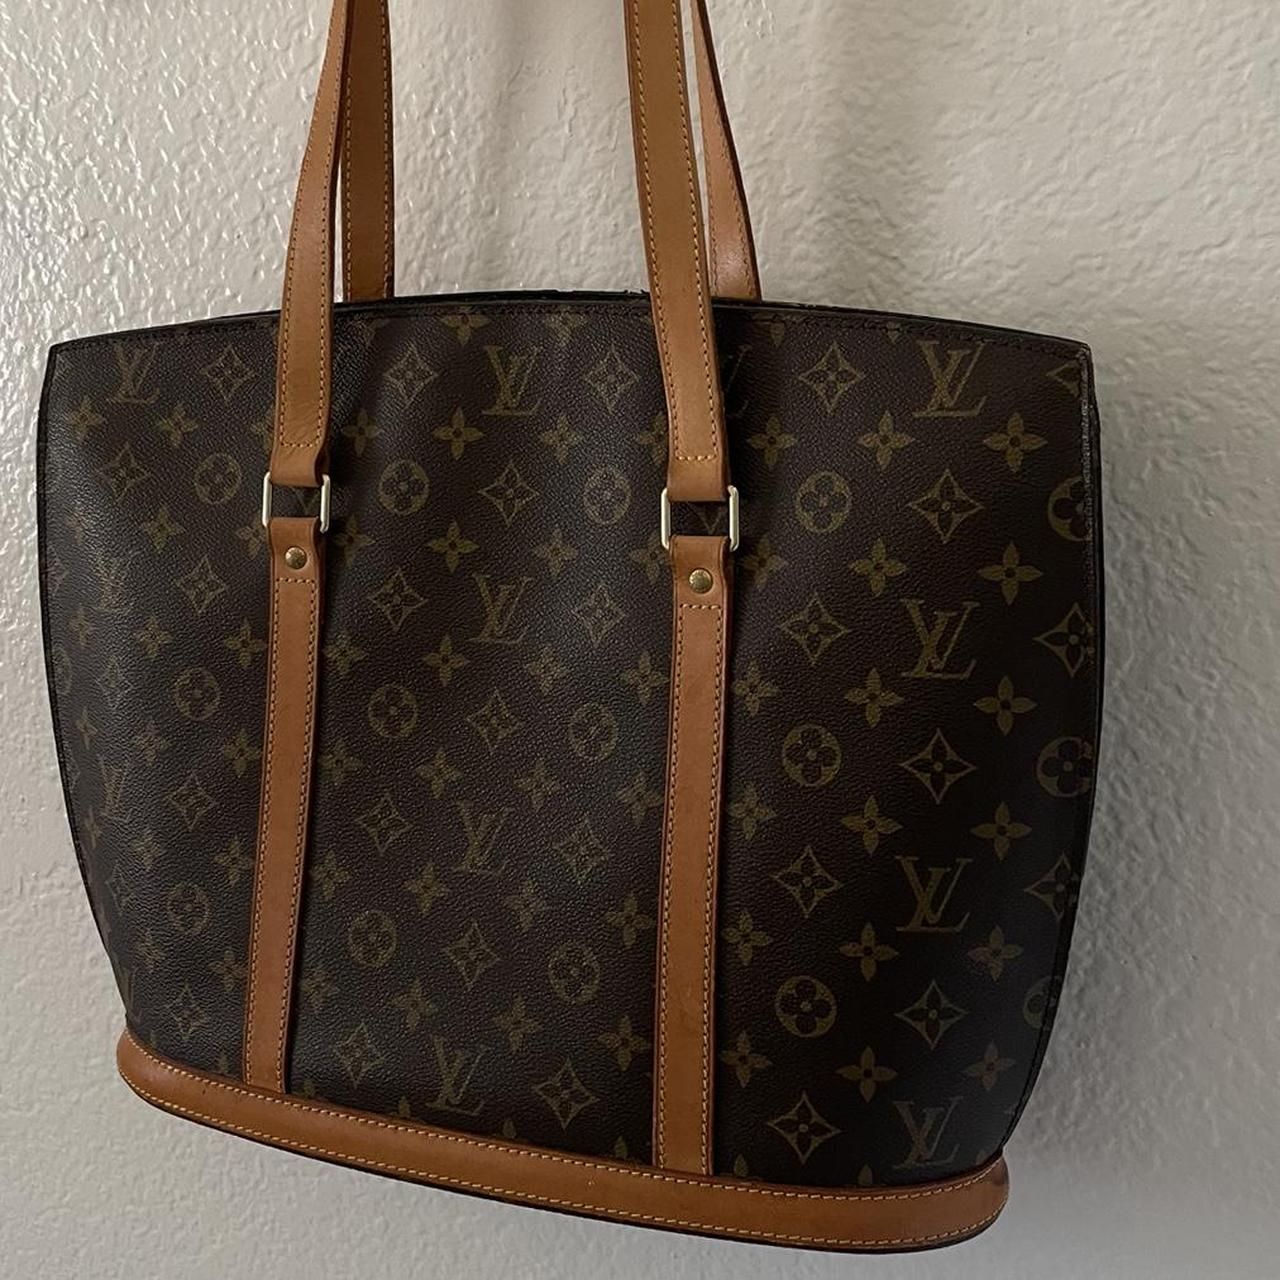 Authentic Louis Vuitton Babylon Shoulder Bag Please - Depop